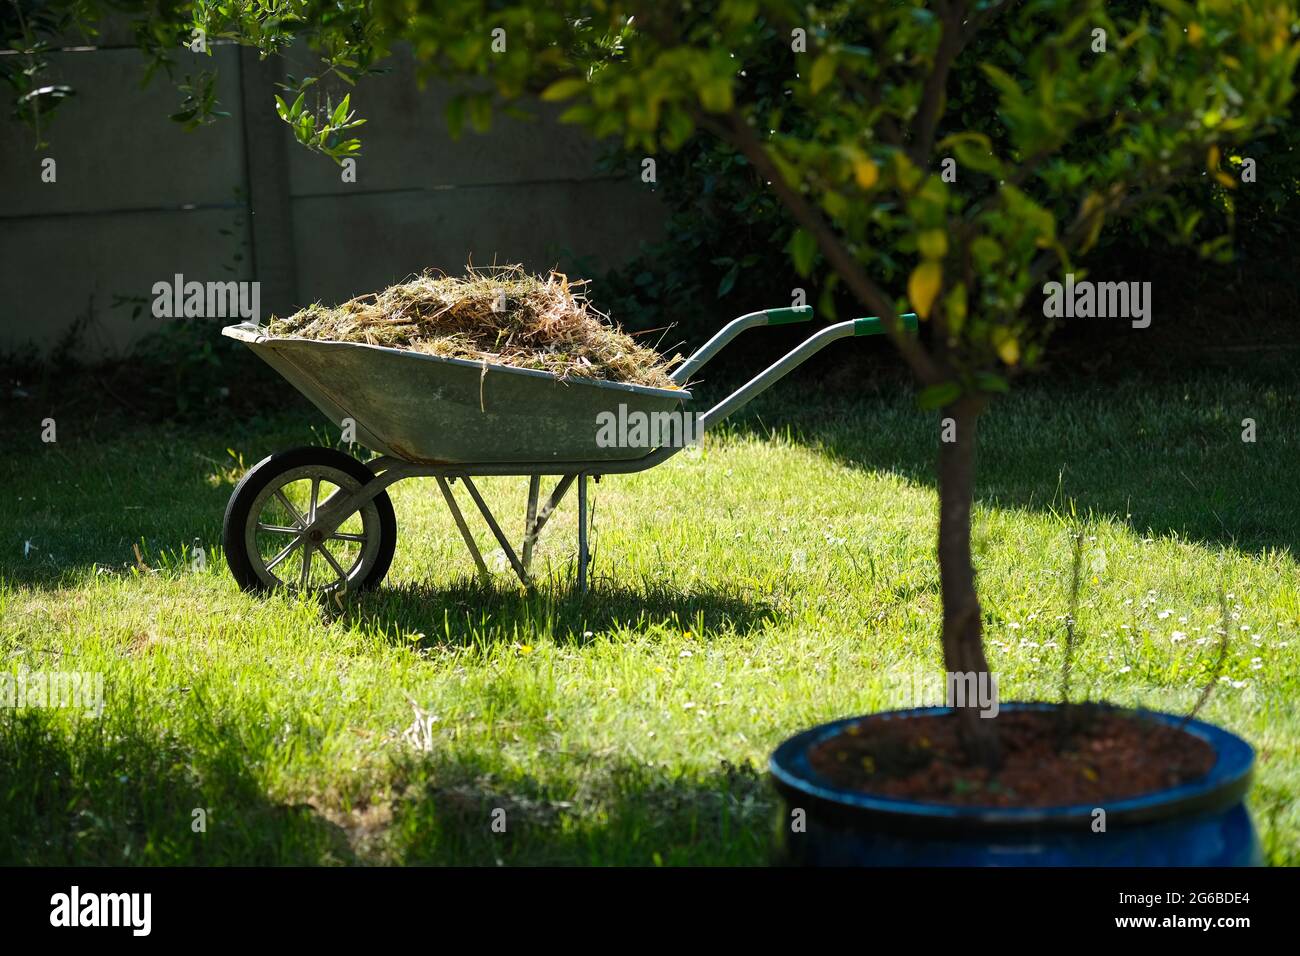 Una carretilla llena de astillas de madera en el fondo del jardín. Milch o  corteza utilizado como compost en hierba verde exuberante en primavera.  paisajismo que se realiza en frongow con herramientas